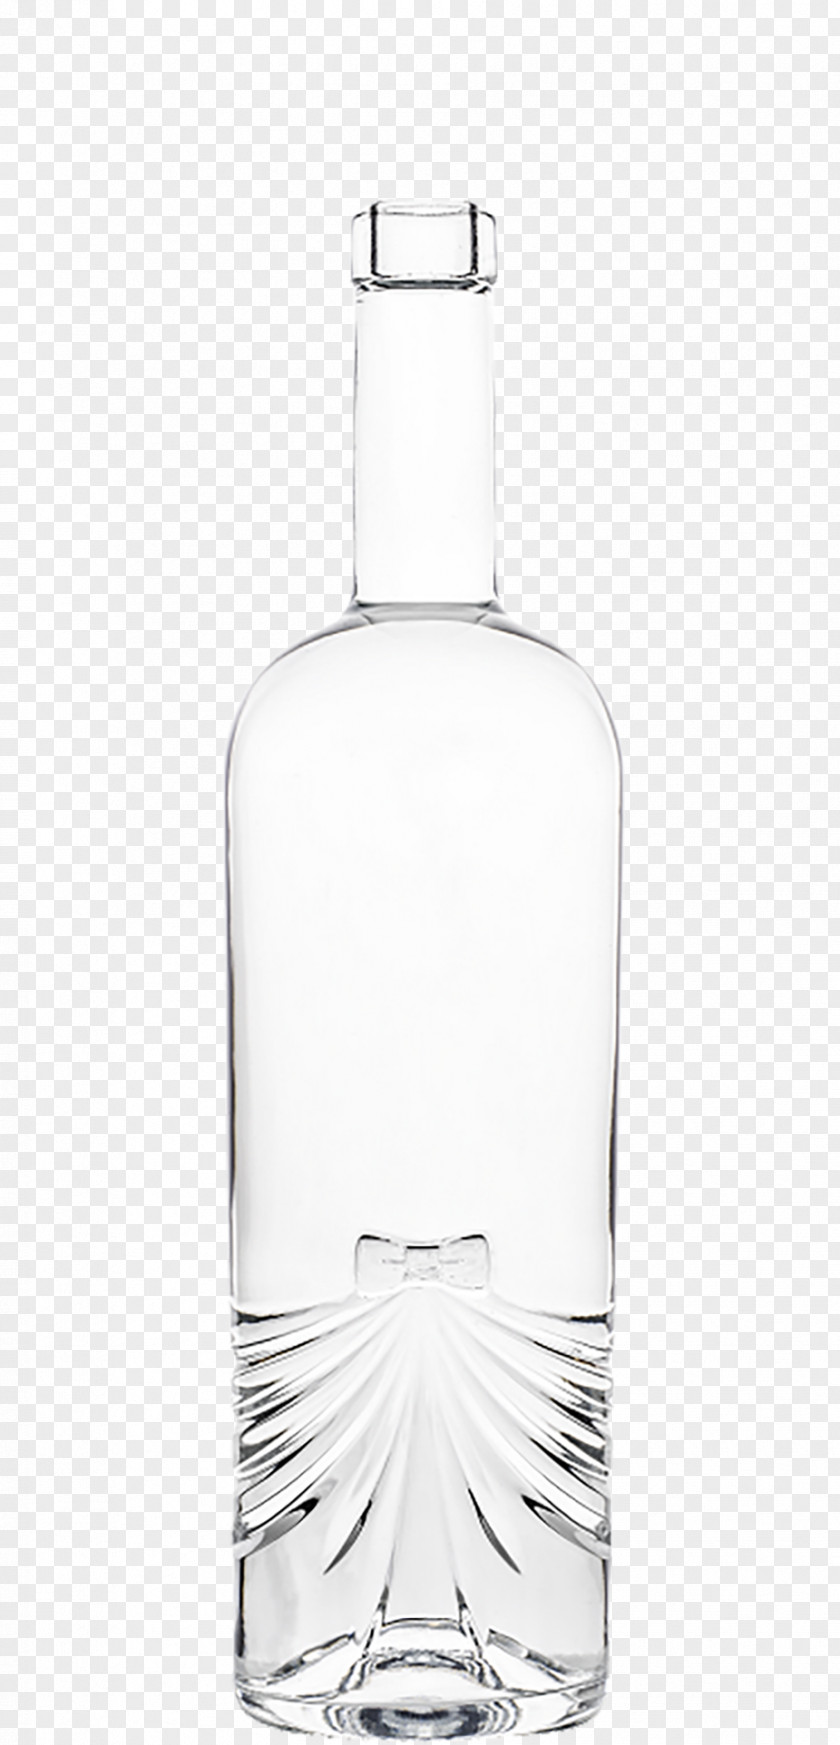 Floral Glass Bottles Bottle Wine Distilled Beverage Bung PNG